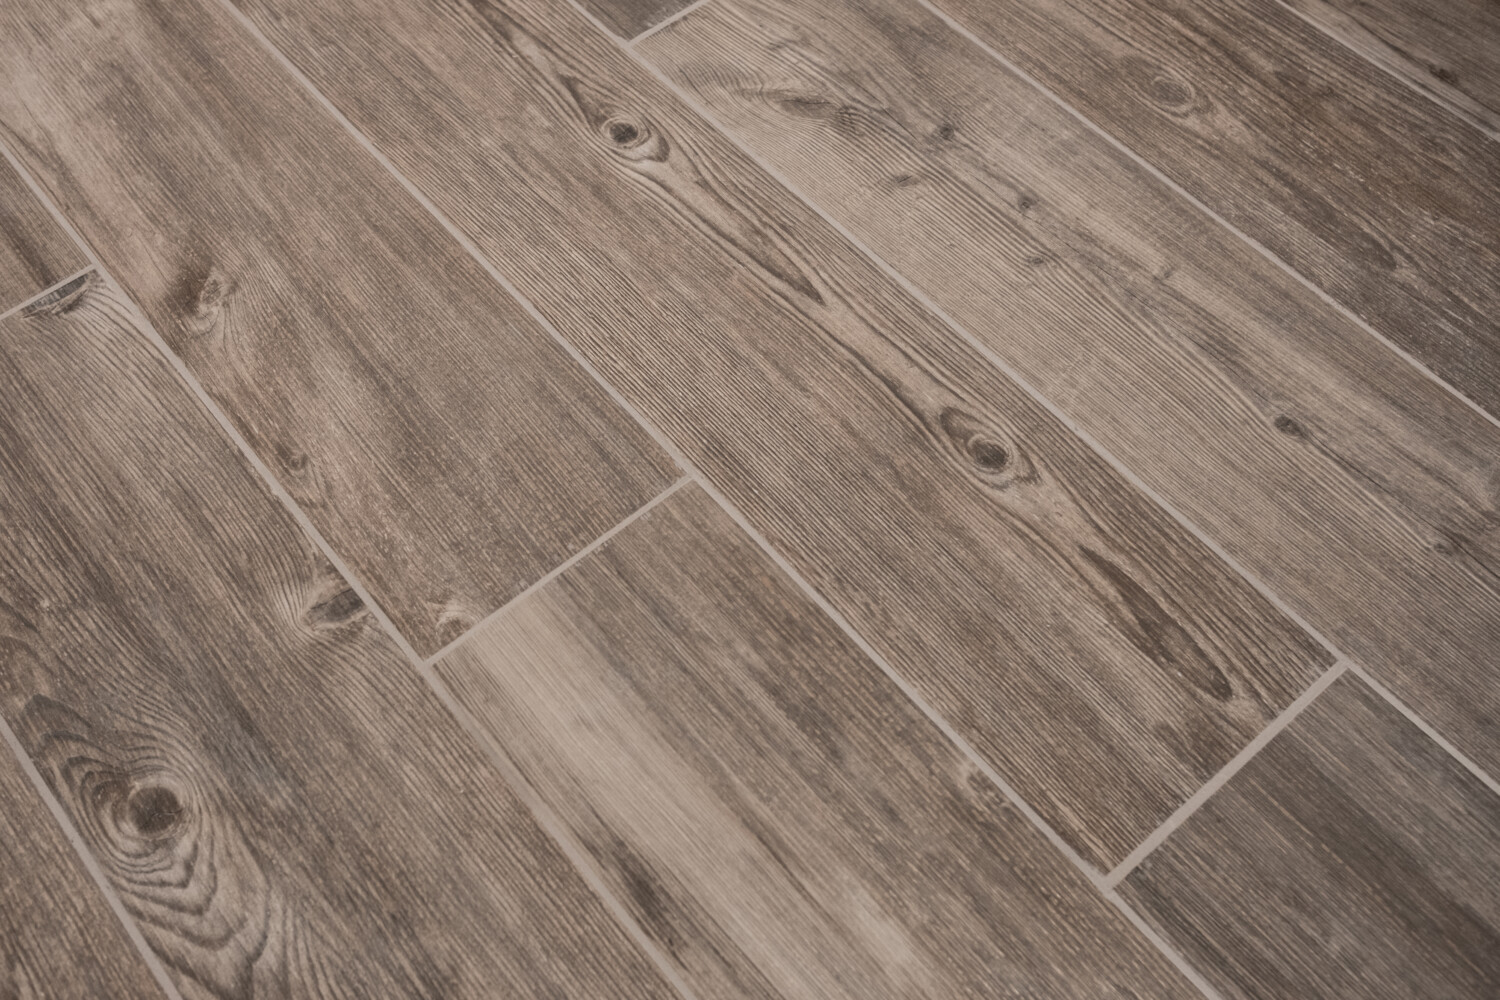 wood texture tiled floor